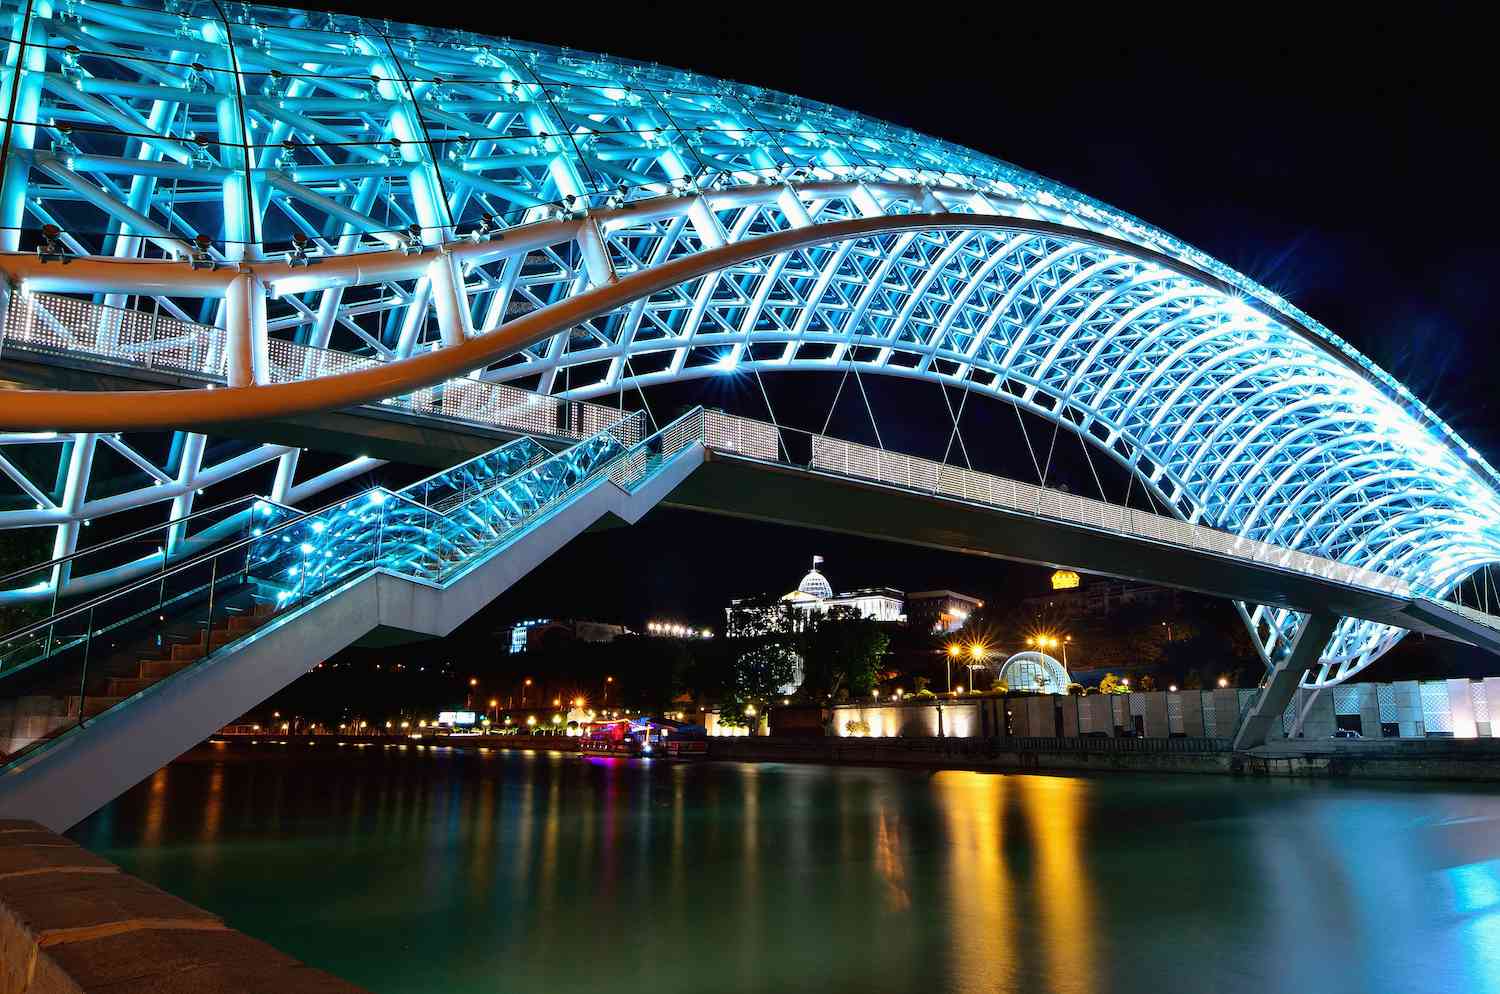 和平之桥在夜晚被蓝色的LED灯点亮